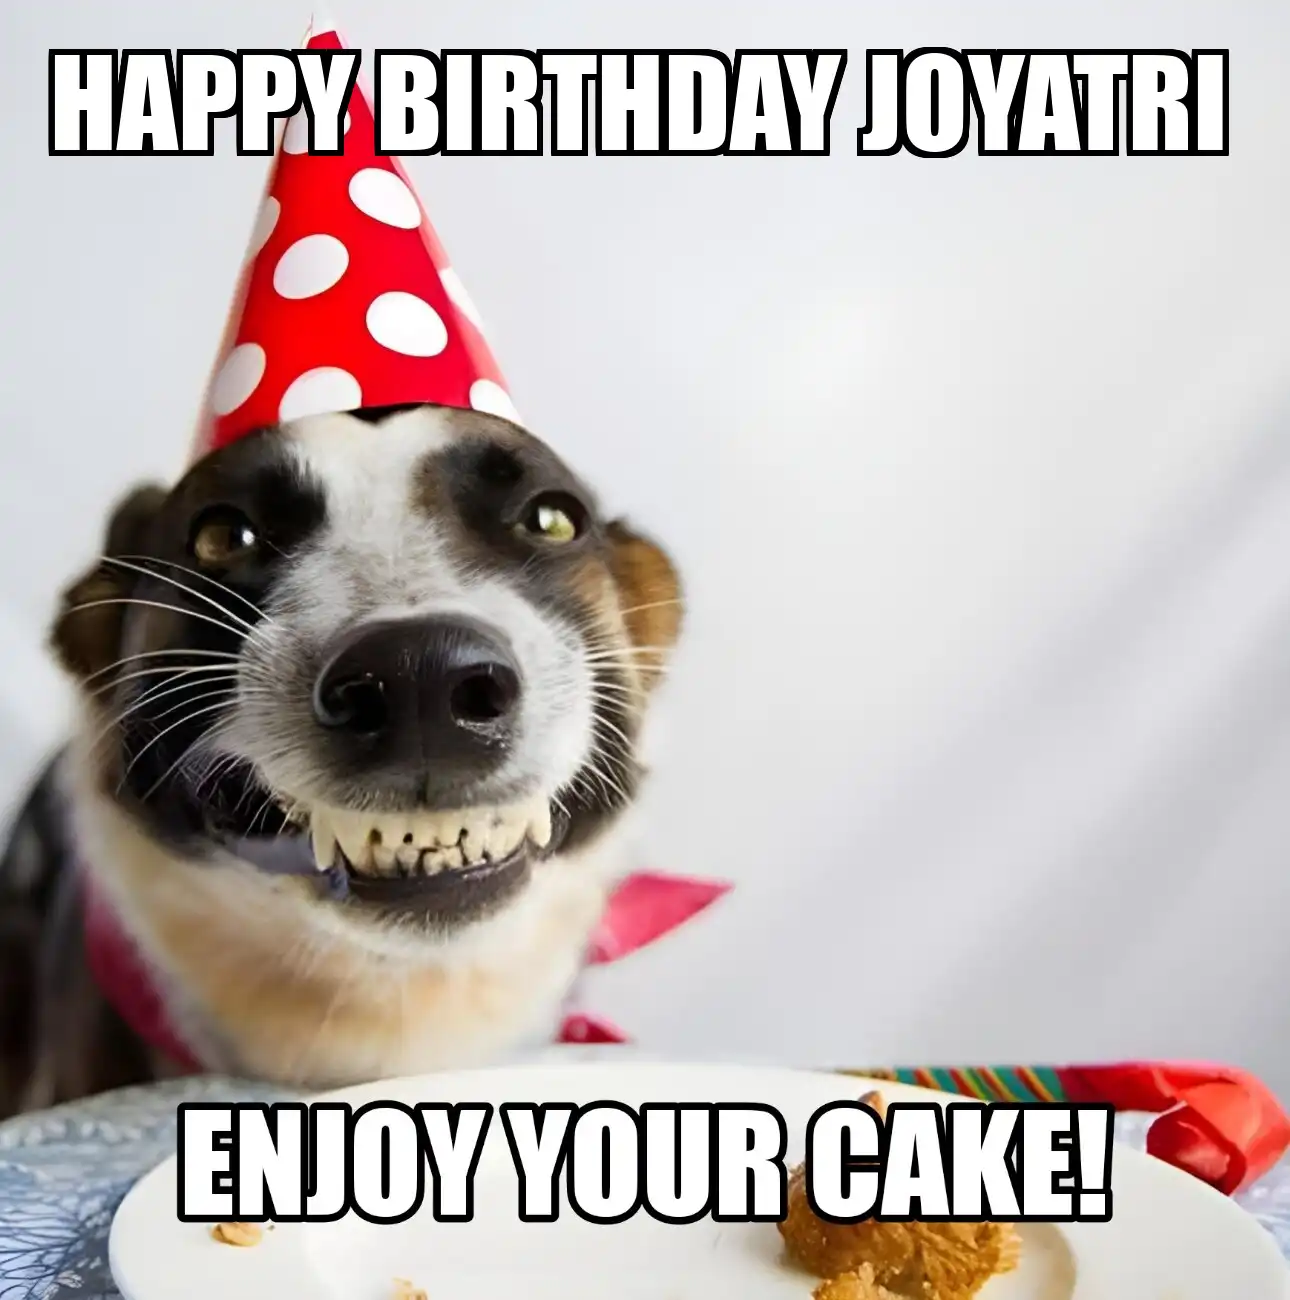 Happy Birthday Joyatri Enjoy Your Cake Dog Meme